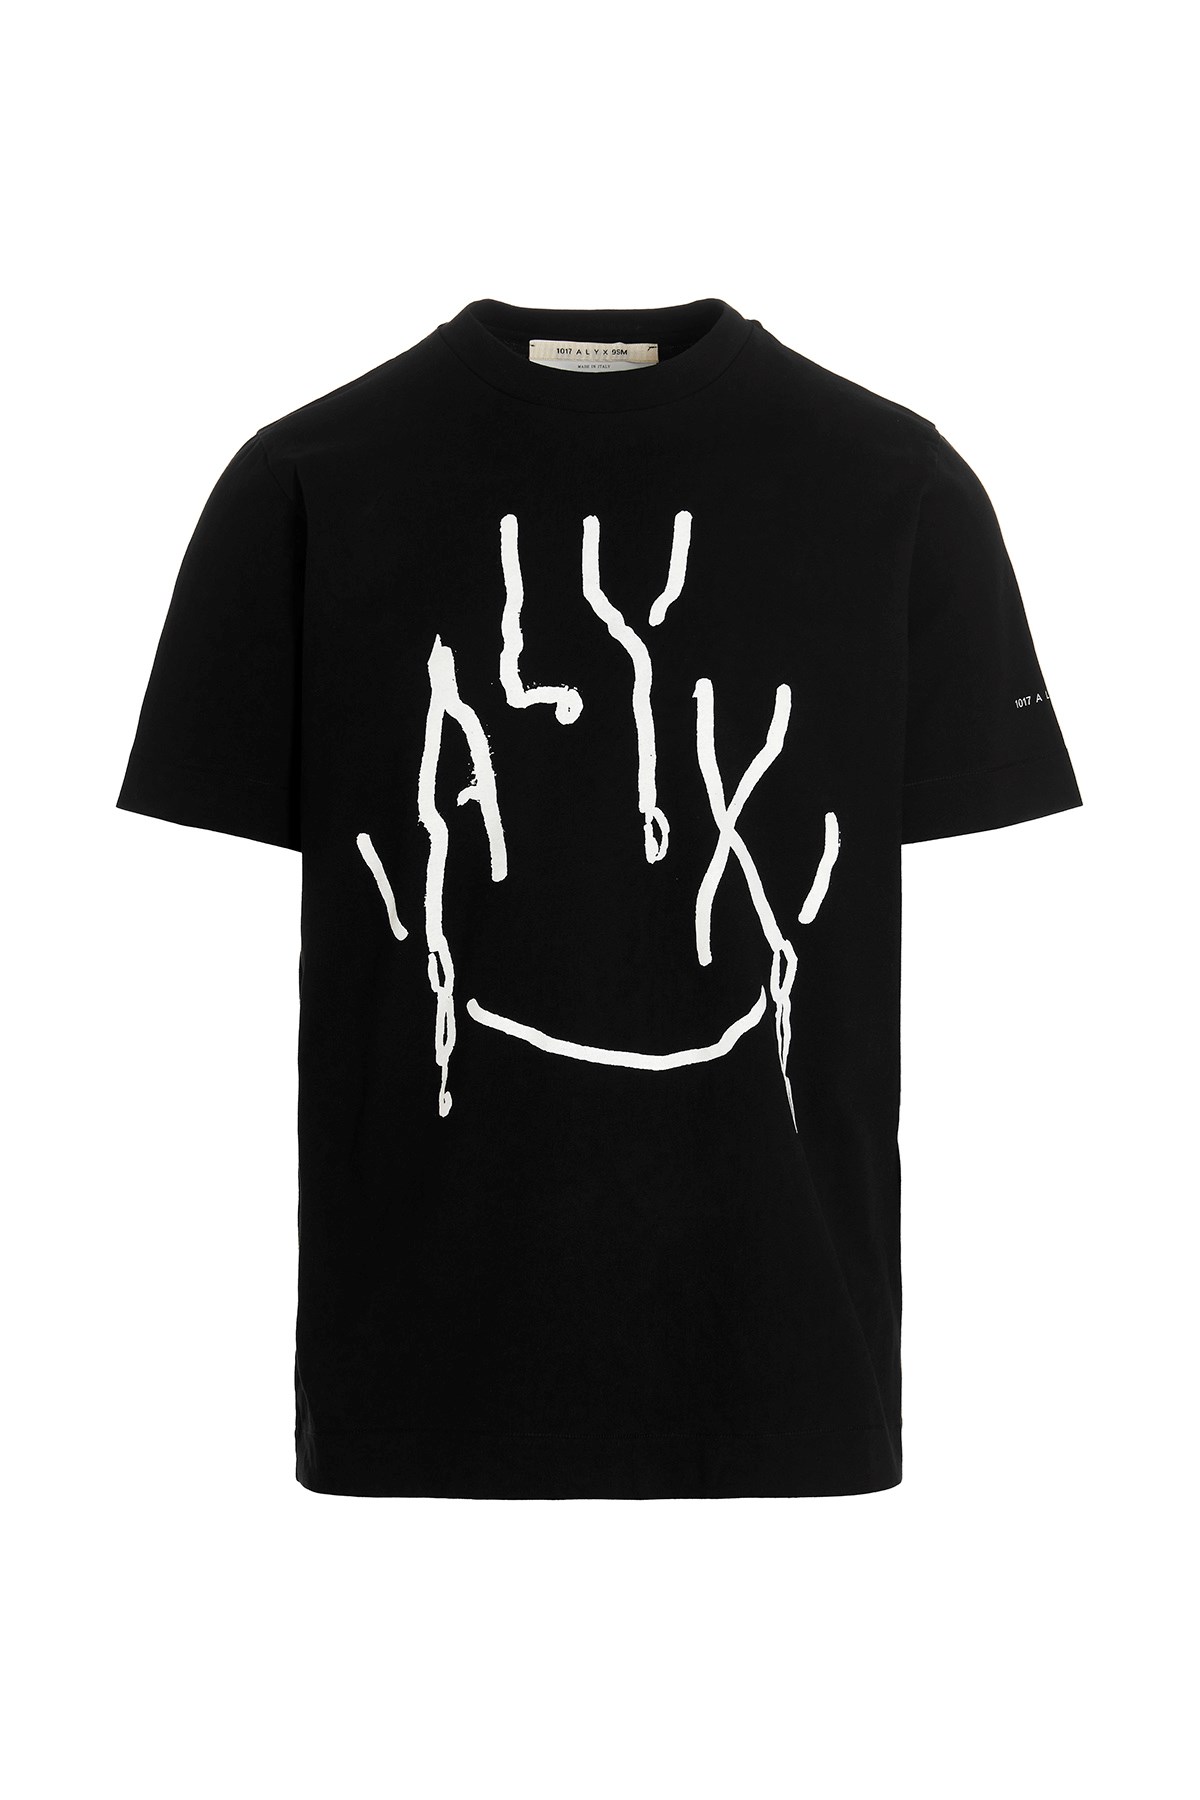 1017-ALYX-9SM T-Shirt Mit Druck